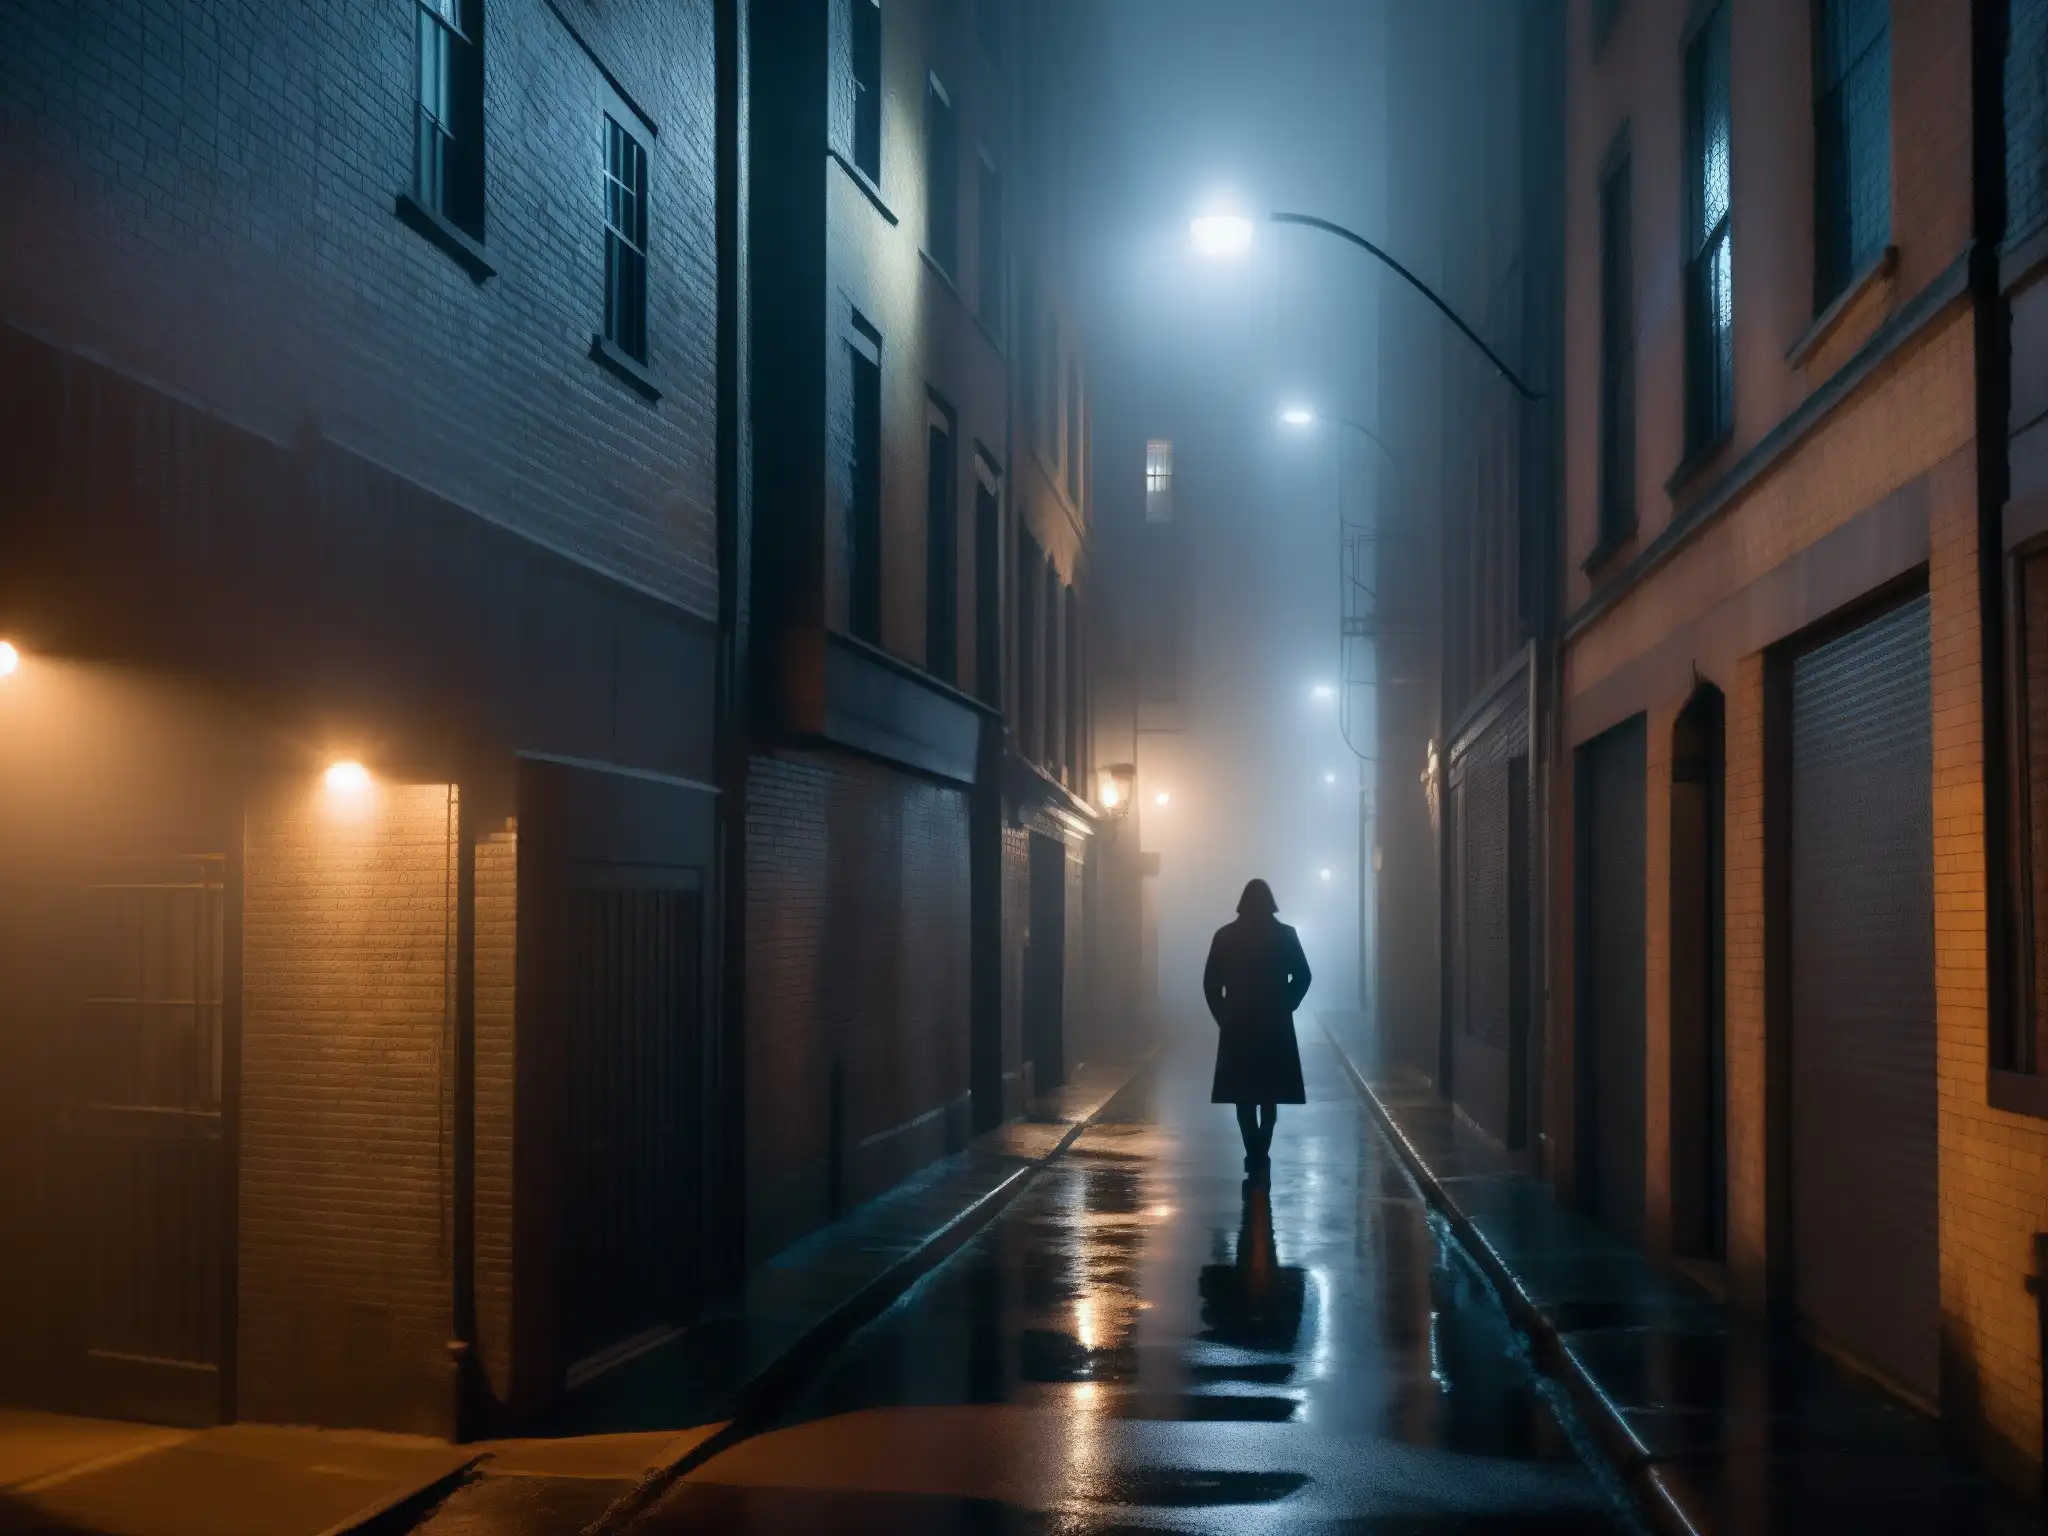 Un callejón nocturno envuelto en niebla, con luces tenues que crean un ambiente de misterio y suspense